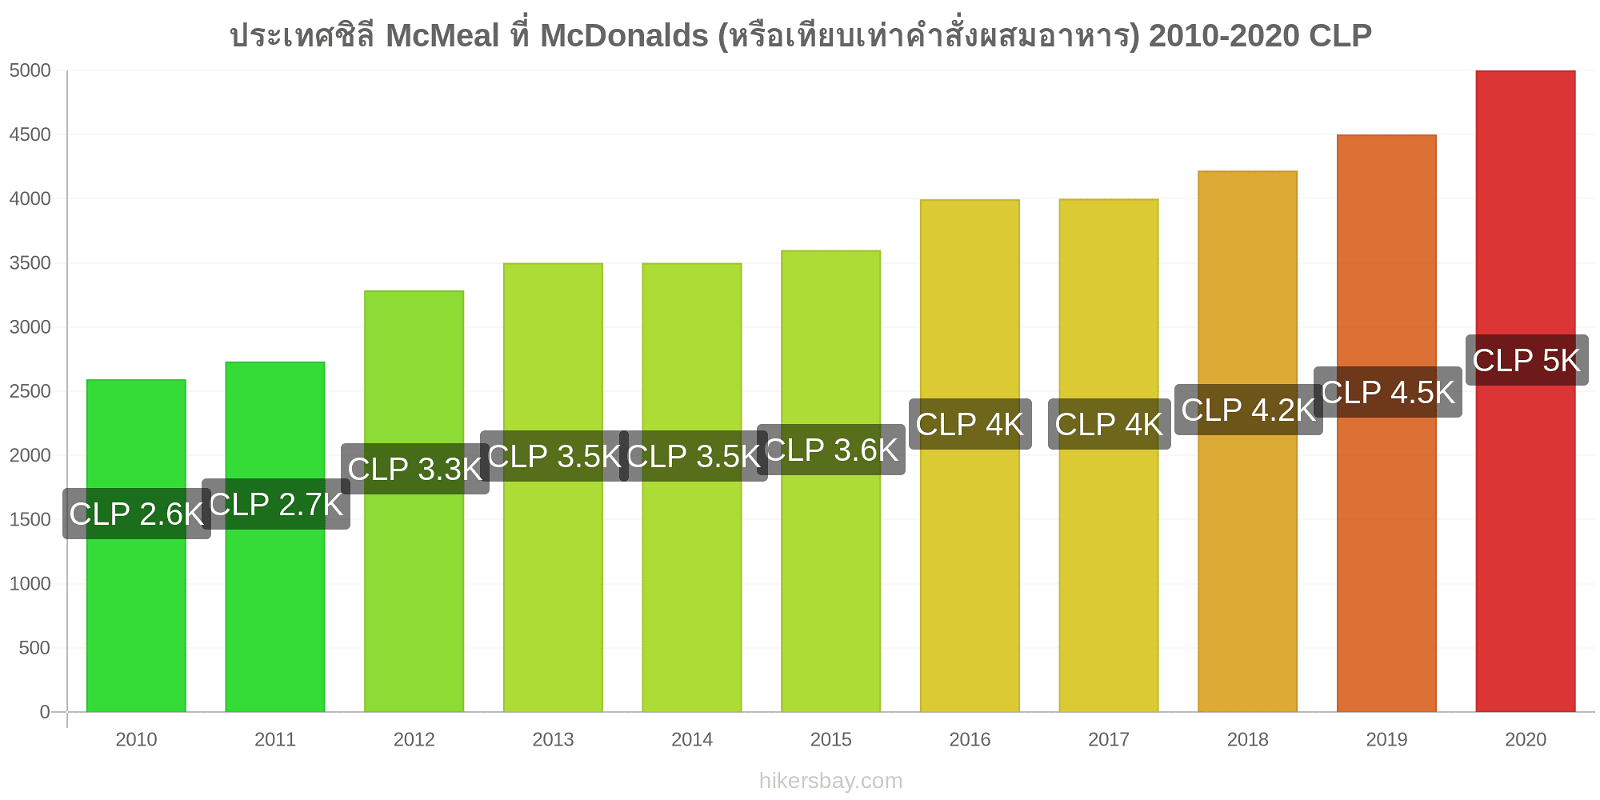 ประเทศชิลี การเปลี่ยนแปลงราคา McMeal ที่ McDonalds (หรือเทียบเท่าคำสั่งผสมอาหาร) hikersbay.com